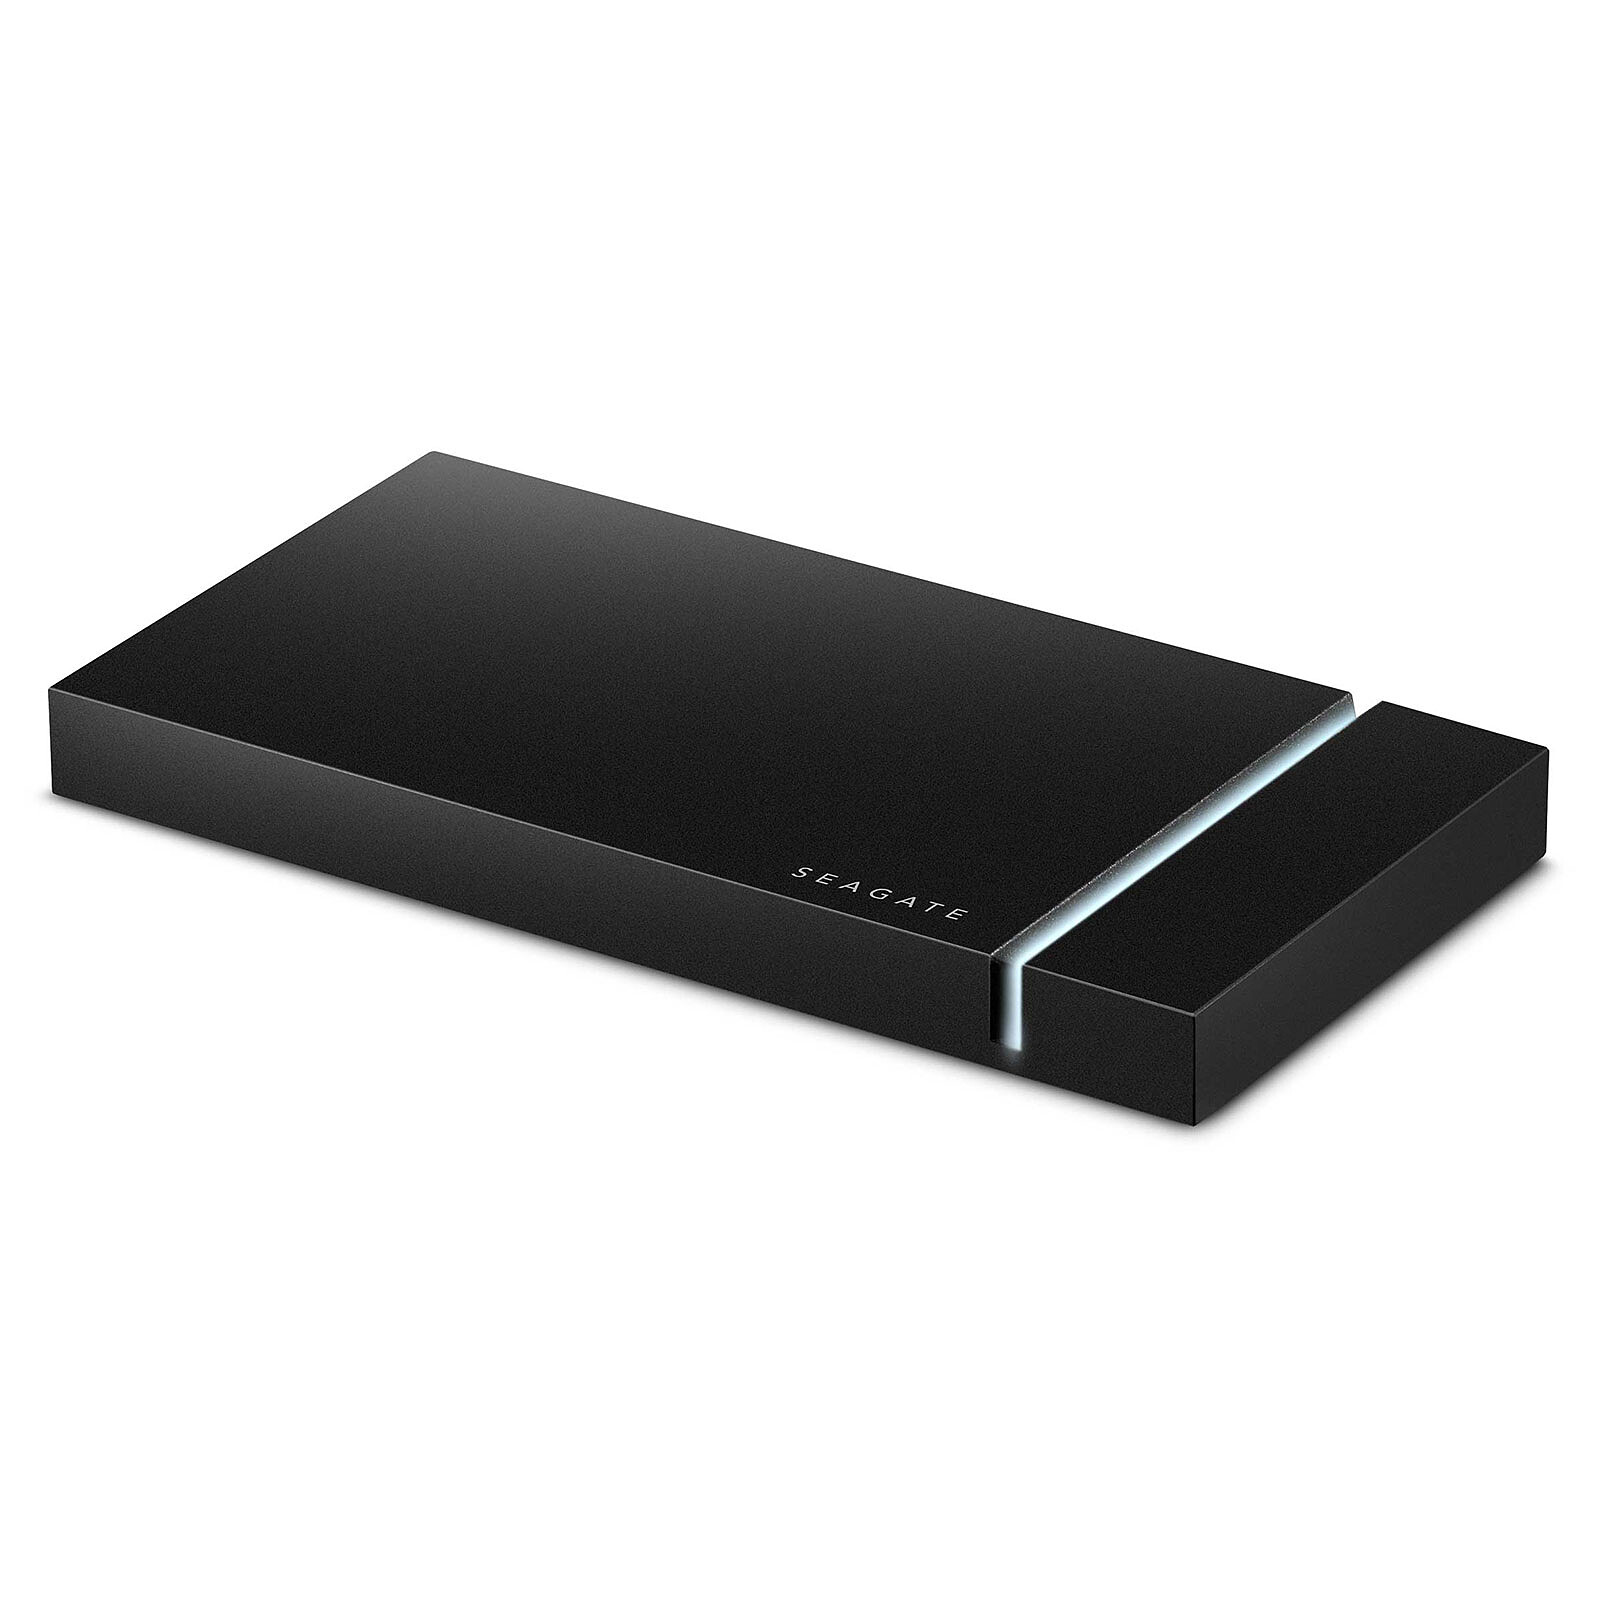 Samsung Portable SSD T7 Touch 1 To Noir - Disque dur externe - LDLC